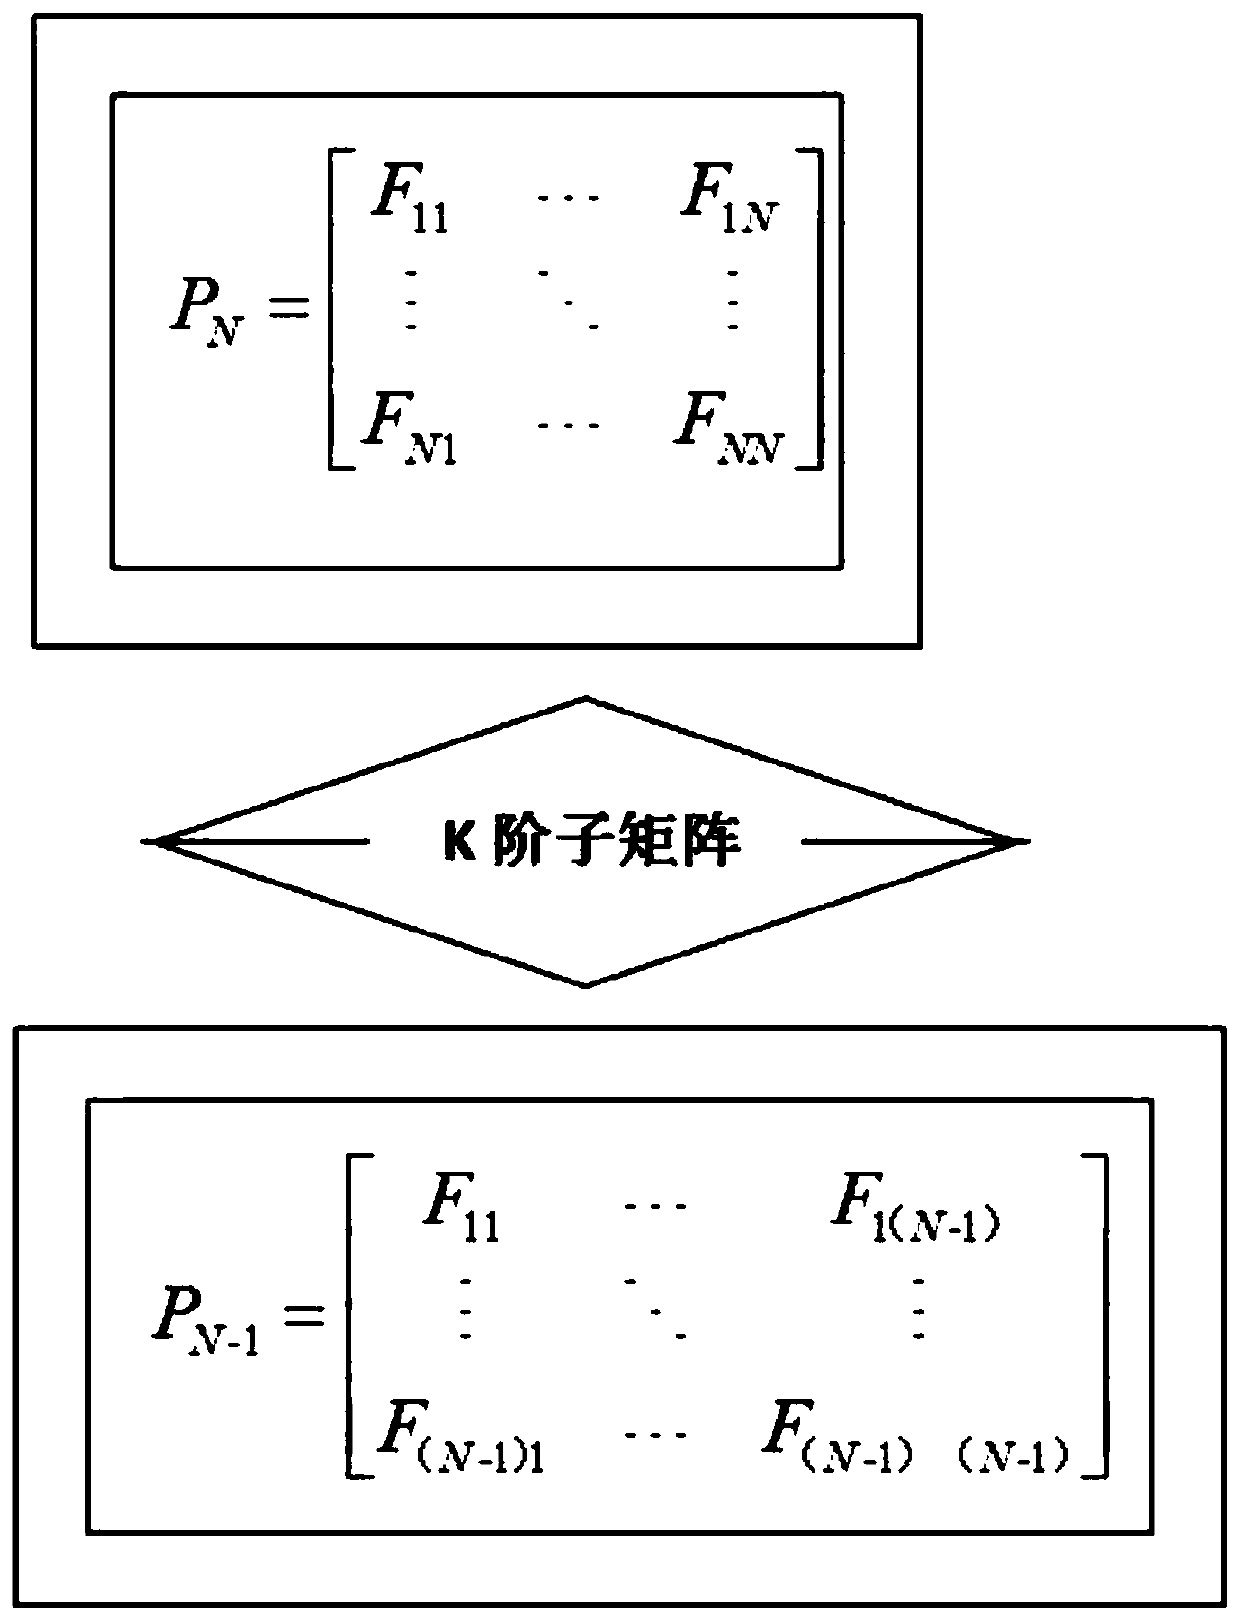 Translation matrix model selection system based on OpenKiWi